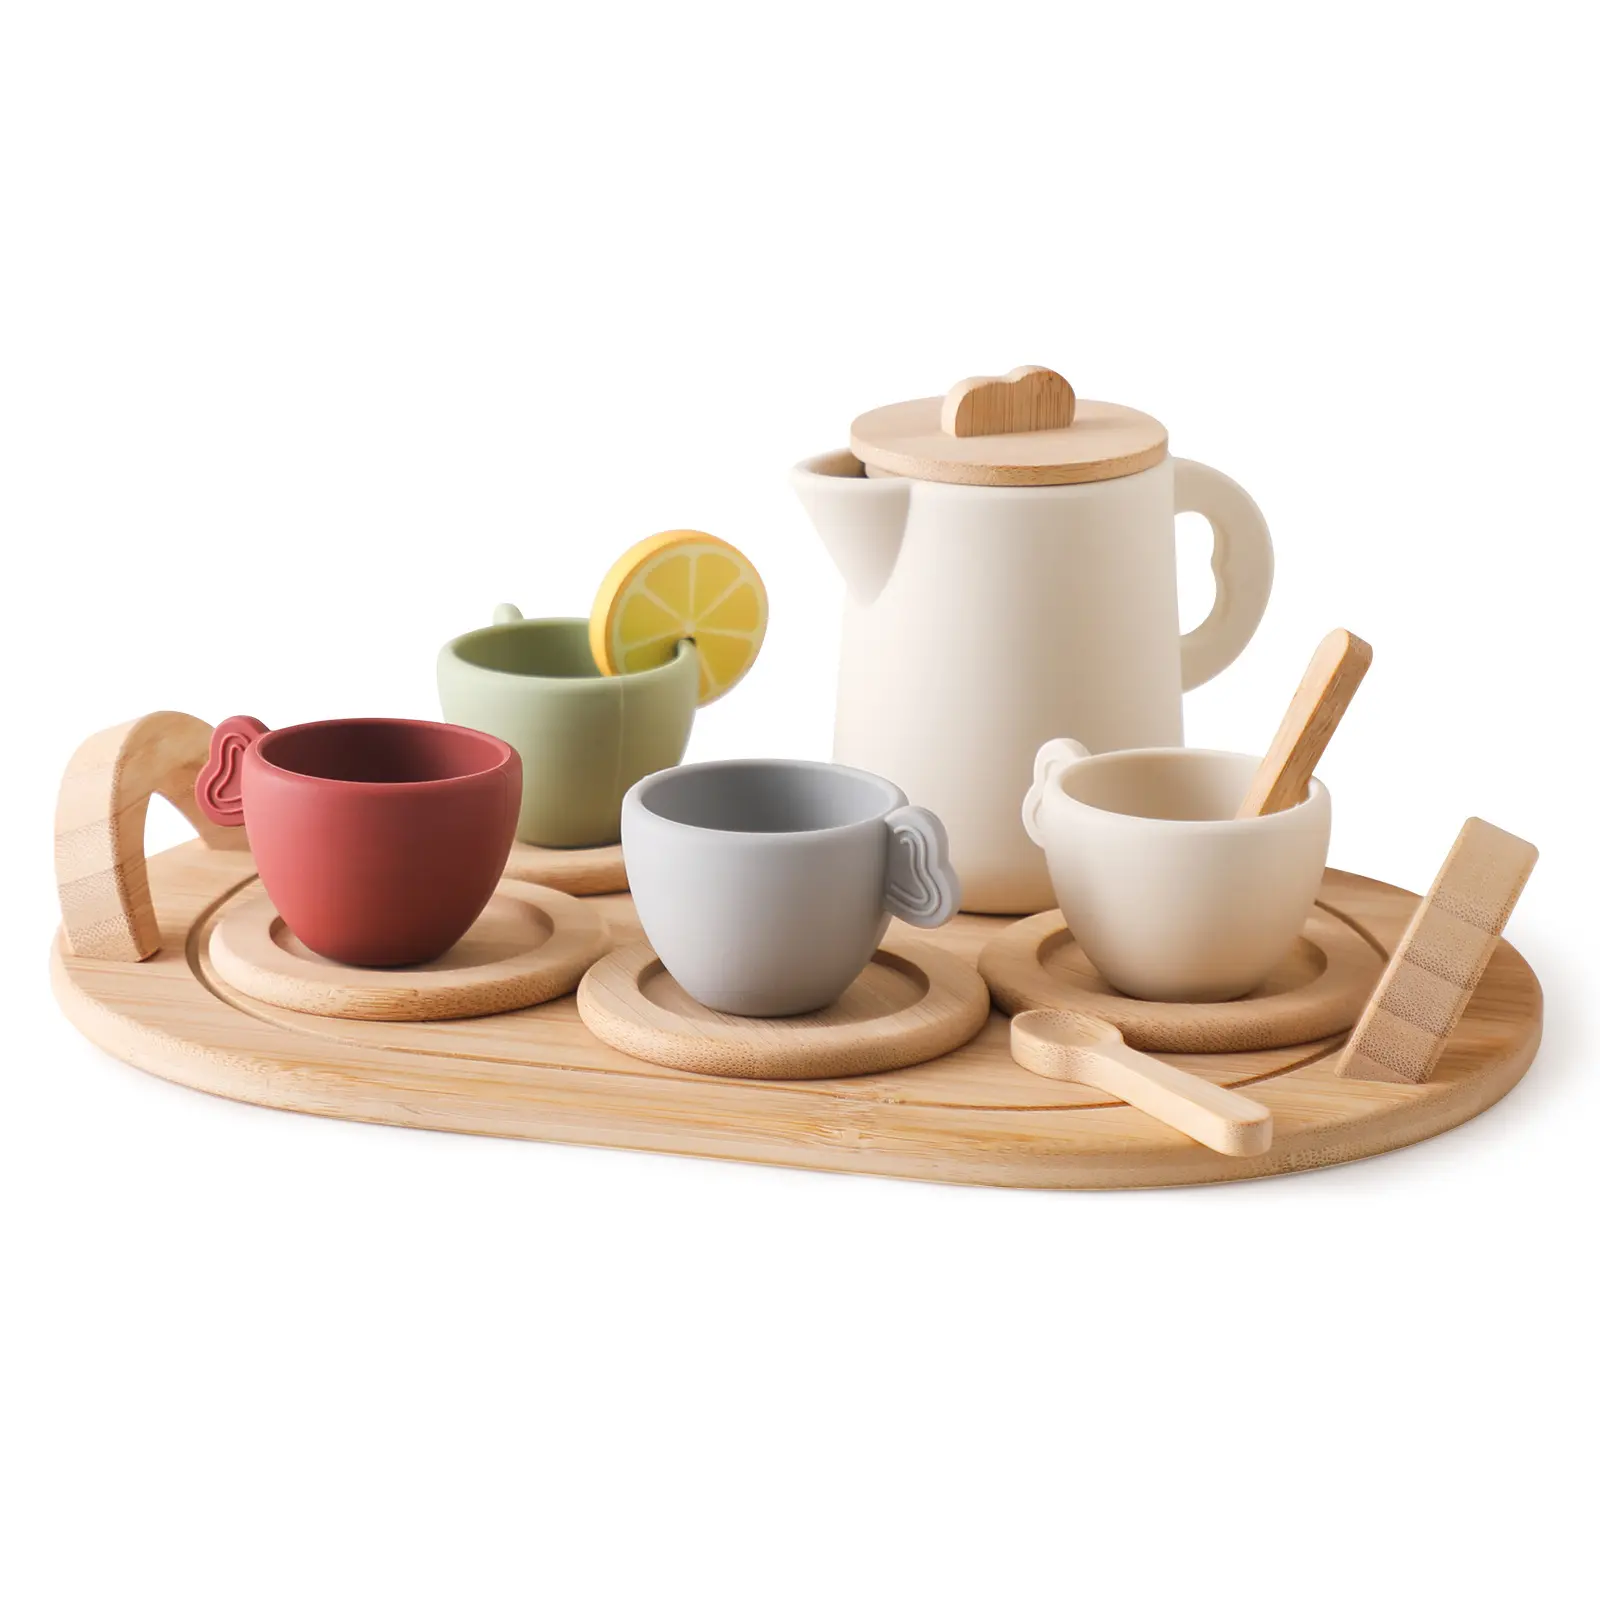 Simulación de cocina de madera Juego de juguetes de té de la tarde Juego de cocina y té de silicona para niños Juegos de simulación Platos de juguete